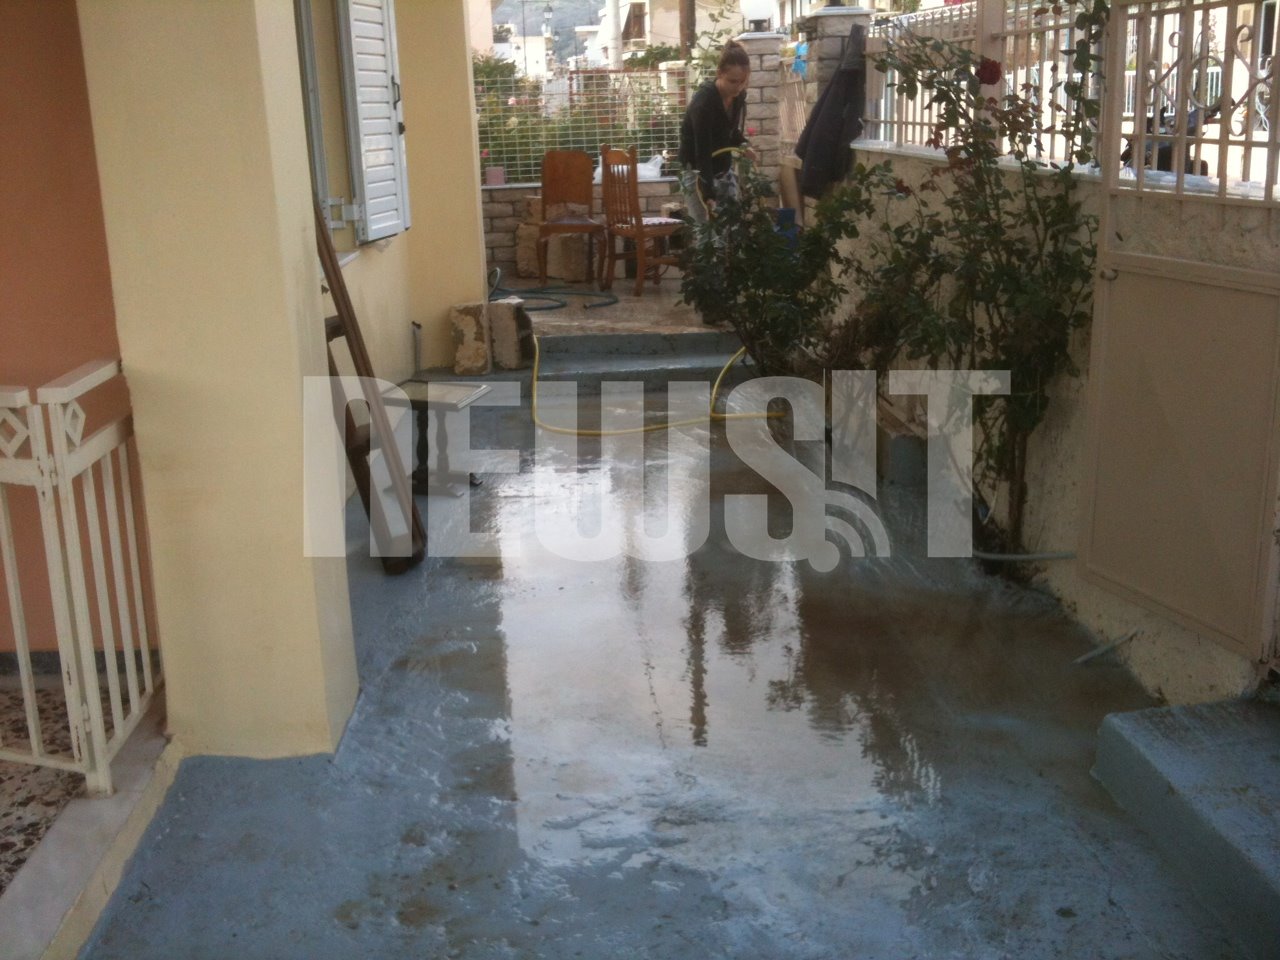 Μια γυναίκα προσπαθεί να καθαρίσει την αυλή της - ΦΩΤΟ NEWSIT